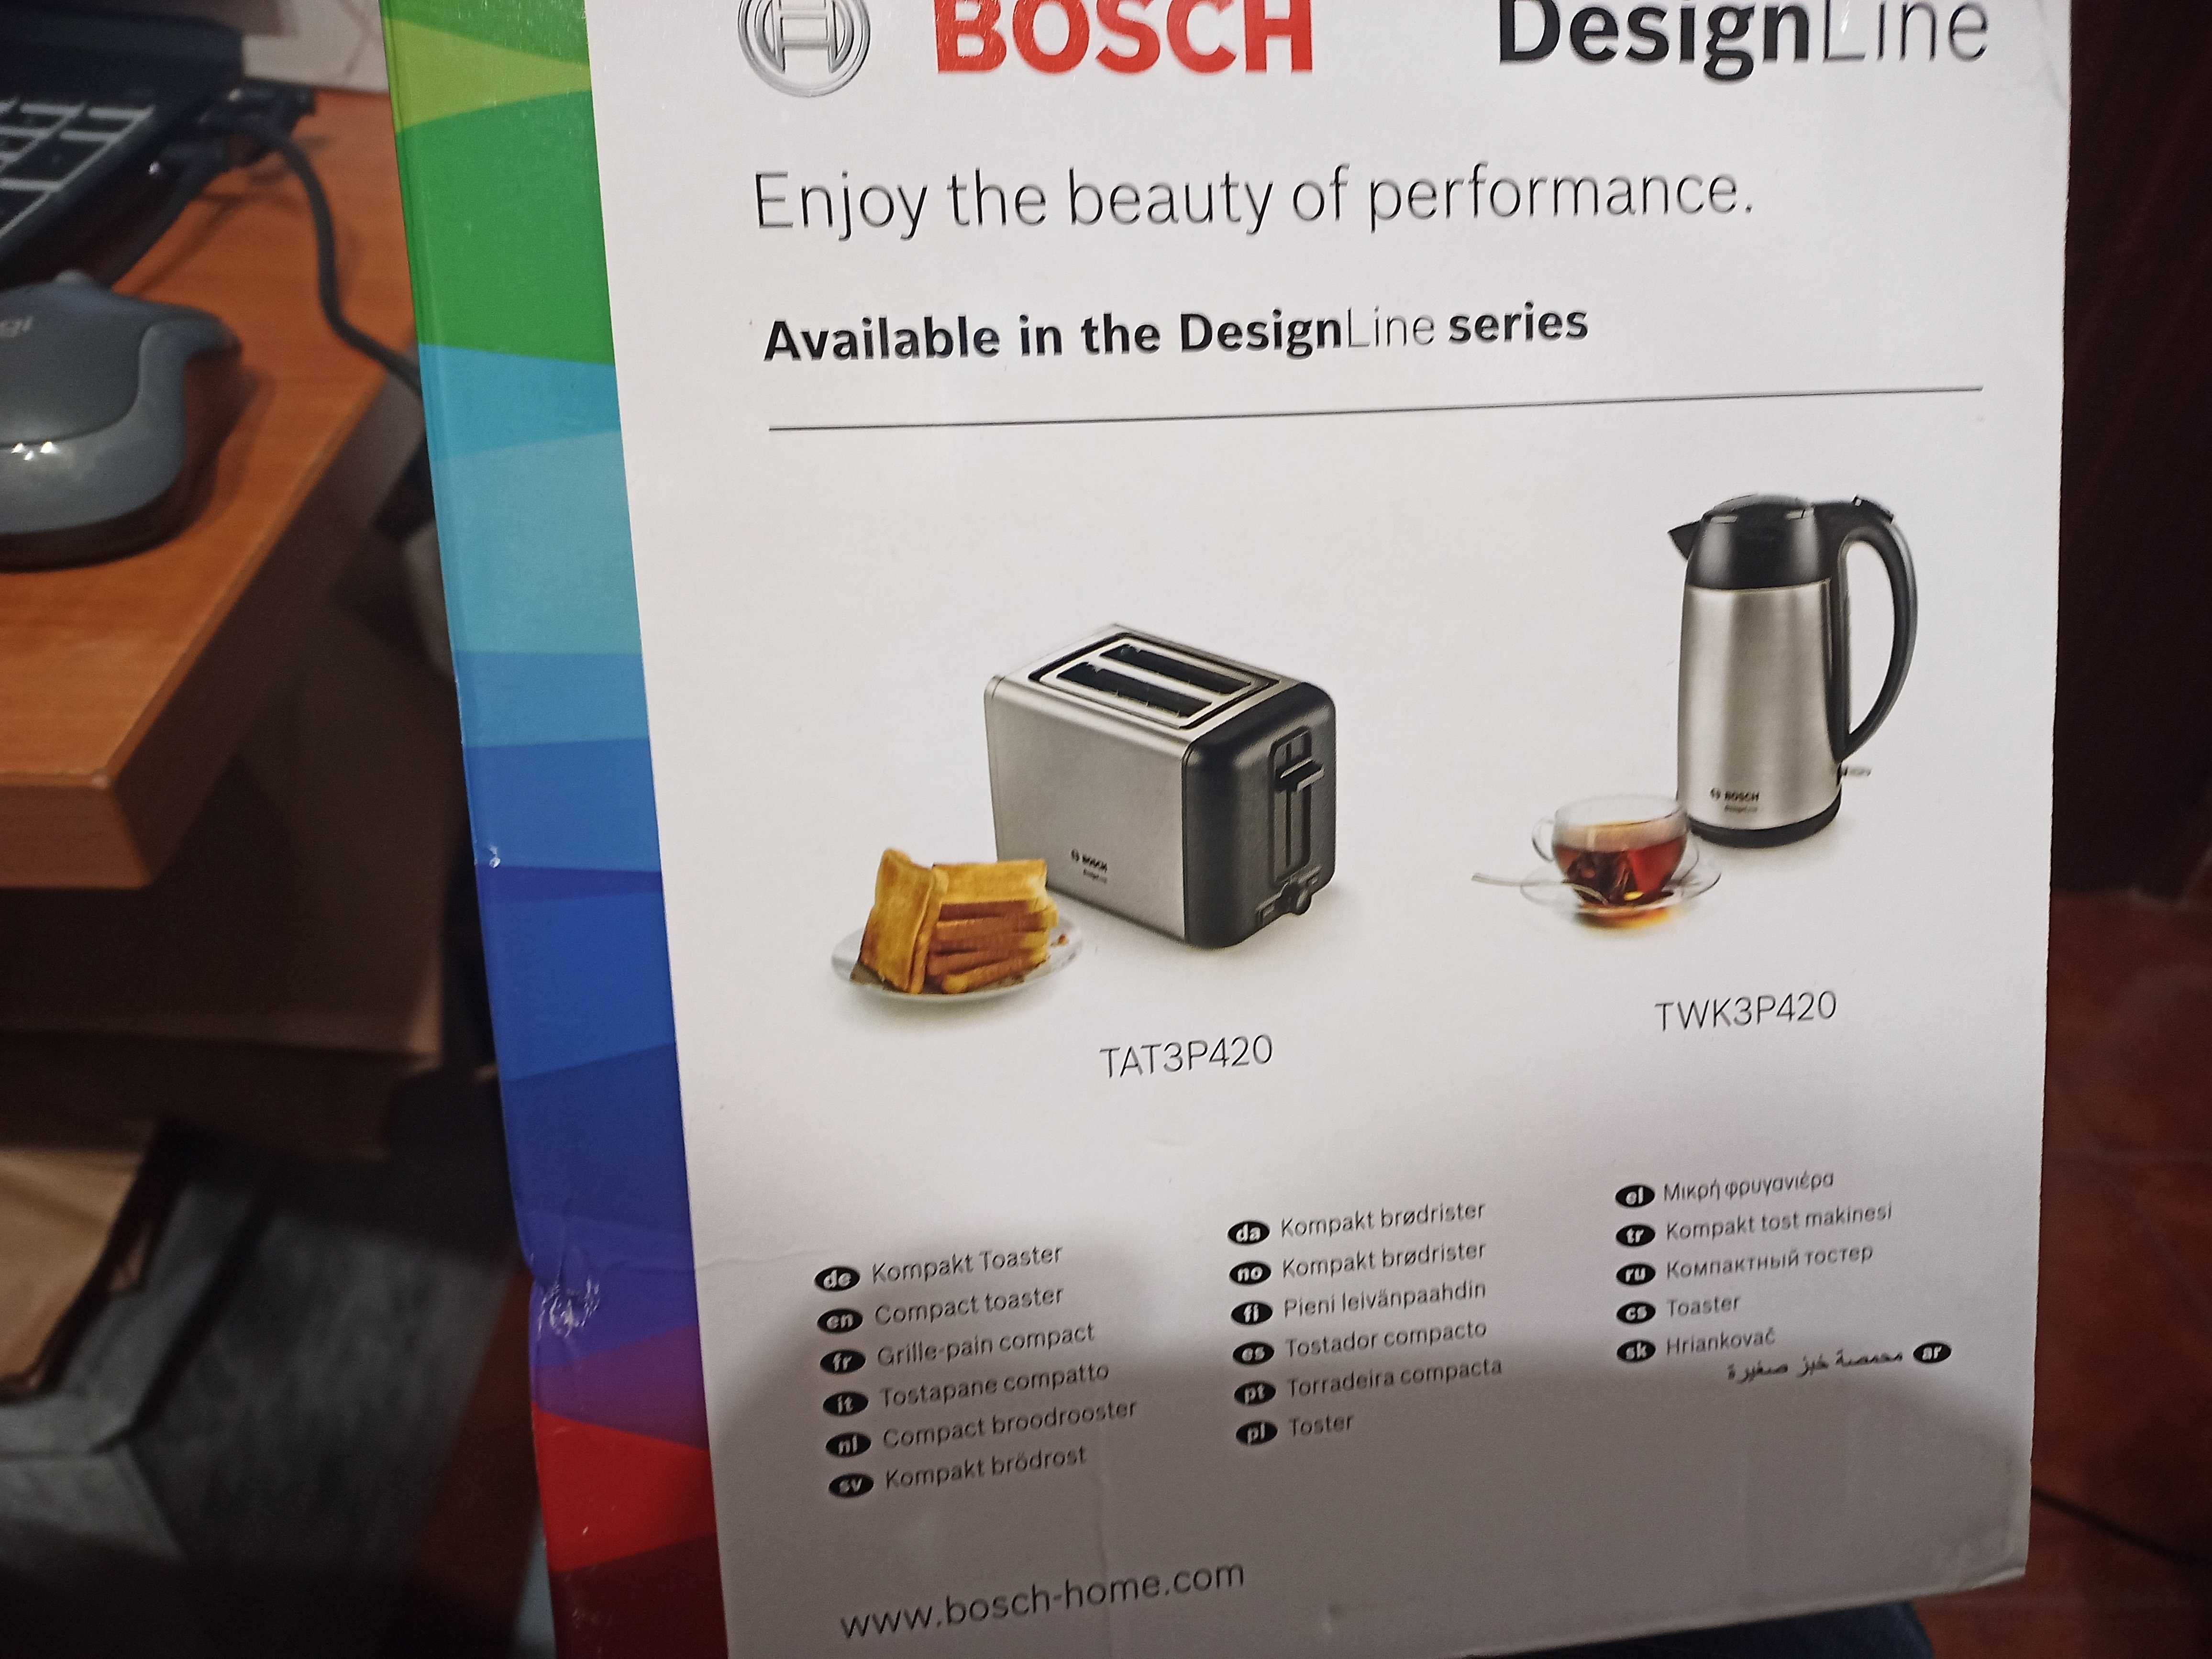 Torradeira Bosch nova com garantia